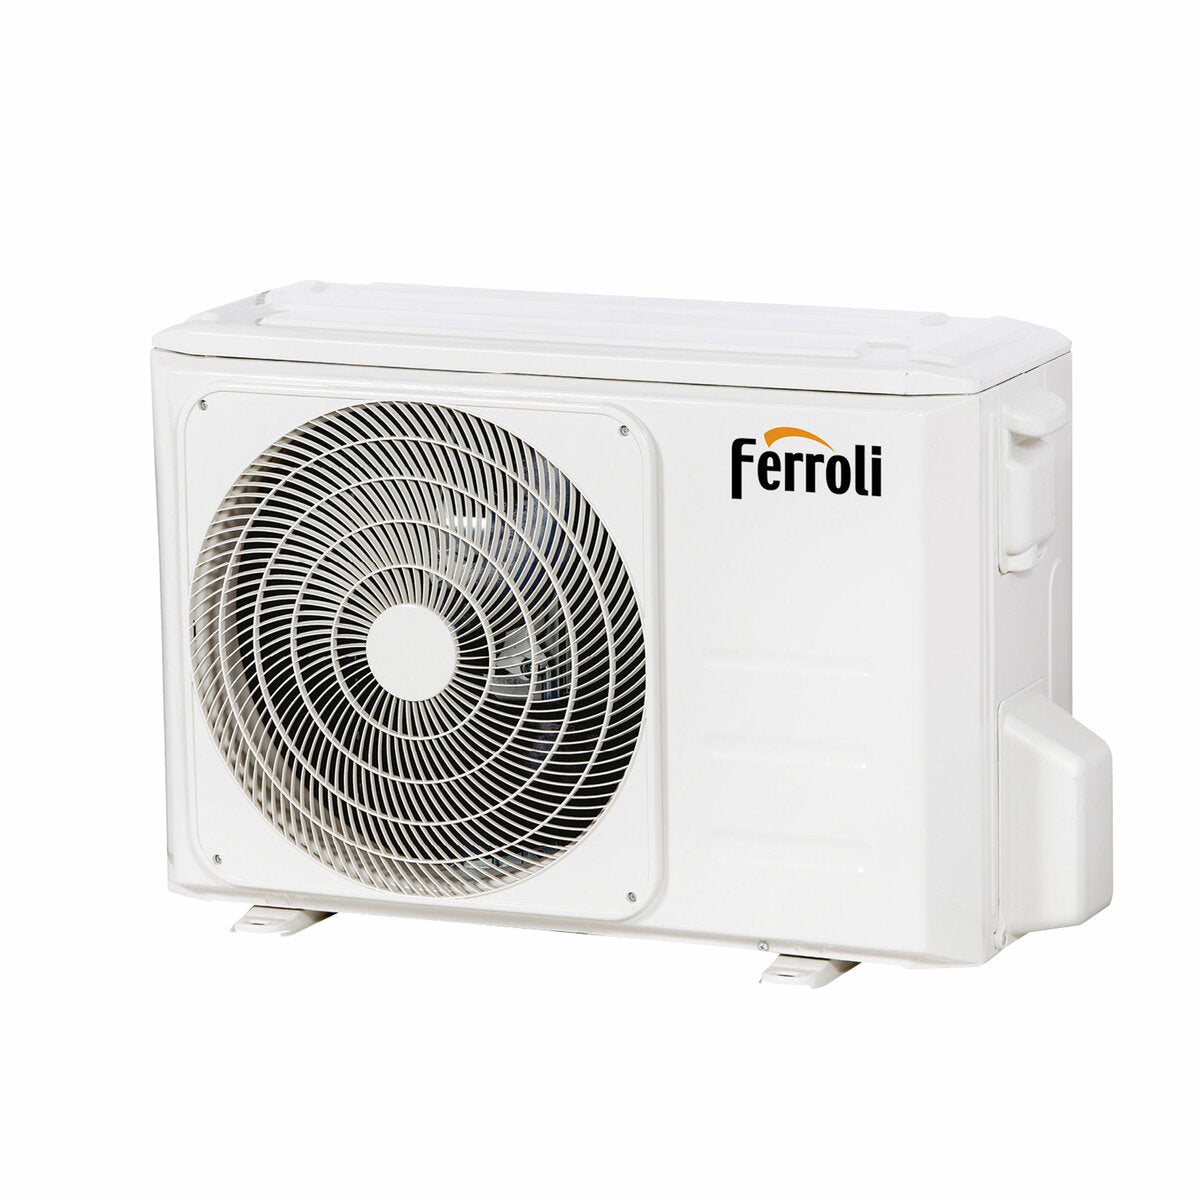 Ferroli Giada dual split air conditioner 12000+12000 BTU inverter A+ wifi outdoor unit 6.2 kW